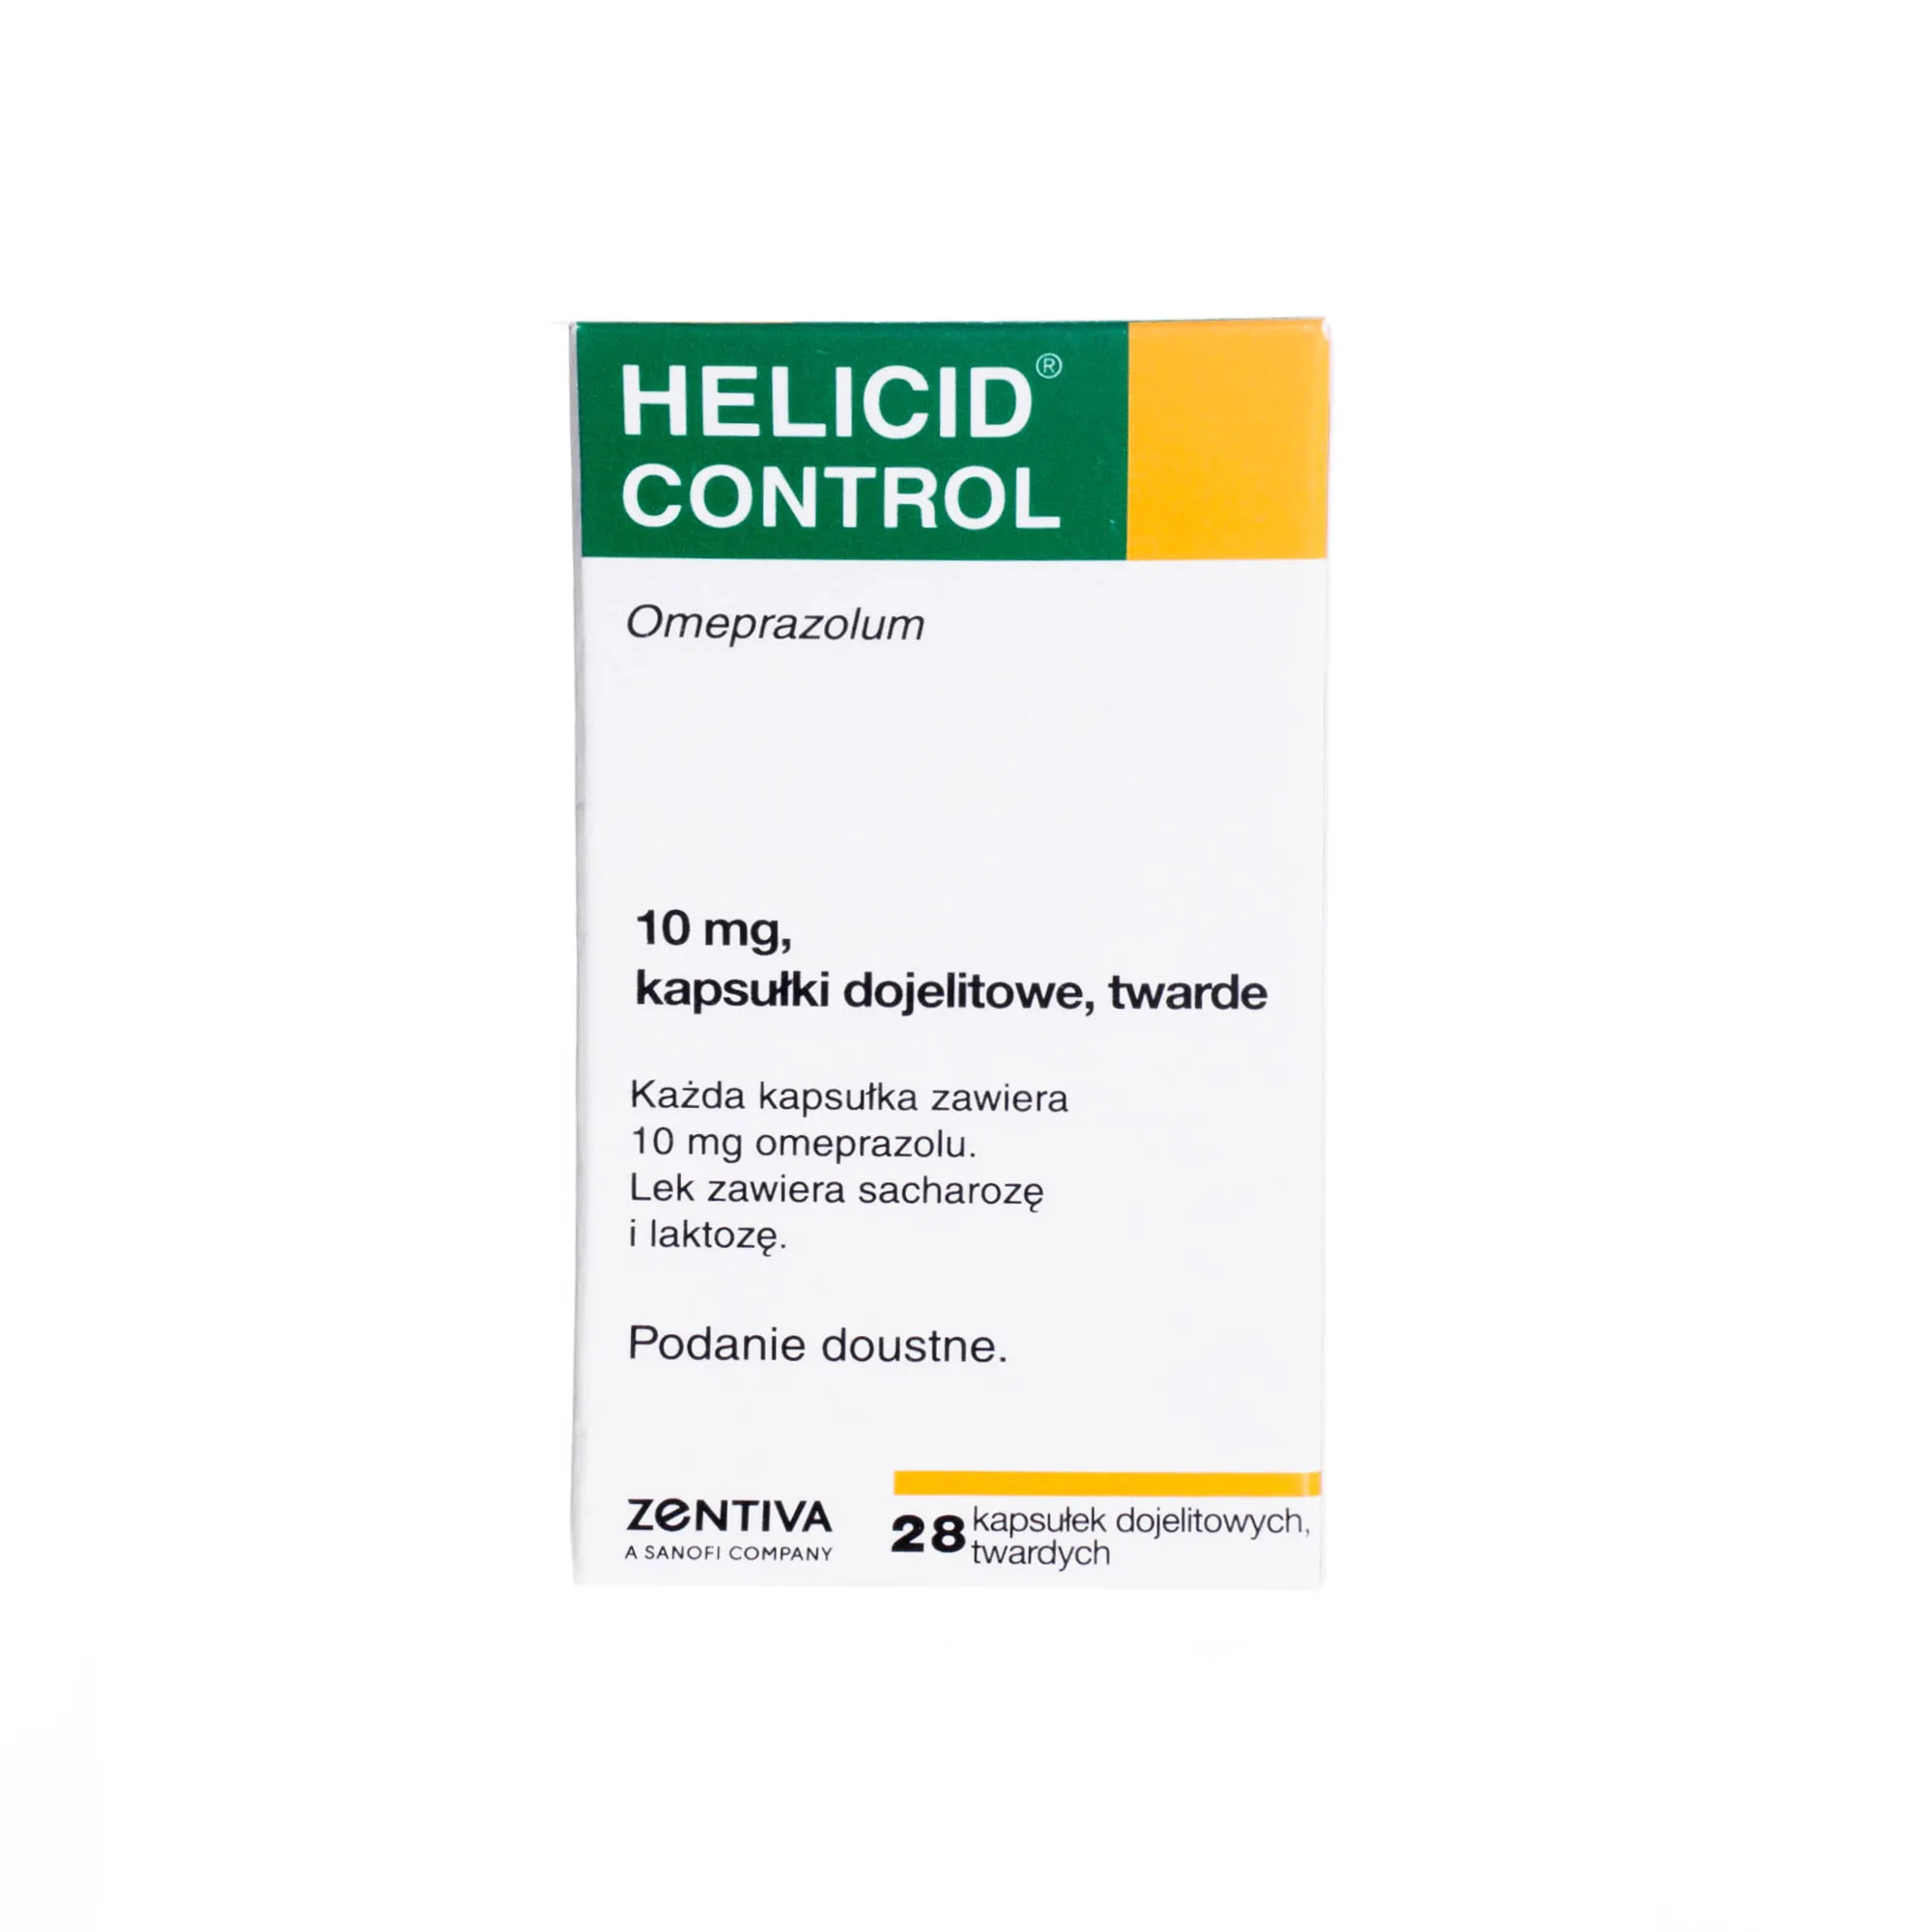 Helicid Control 10 mg - kapsułki dojelitowe do krótkotrwałego leczenia objawów refluksu żołądkowo-przełykowego, 28 kapsułek twardych 